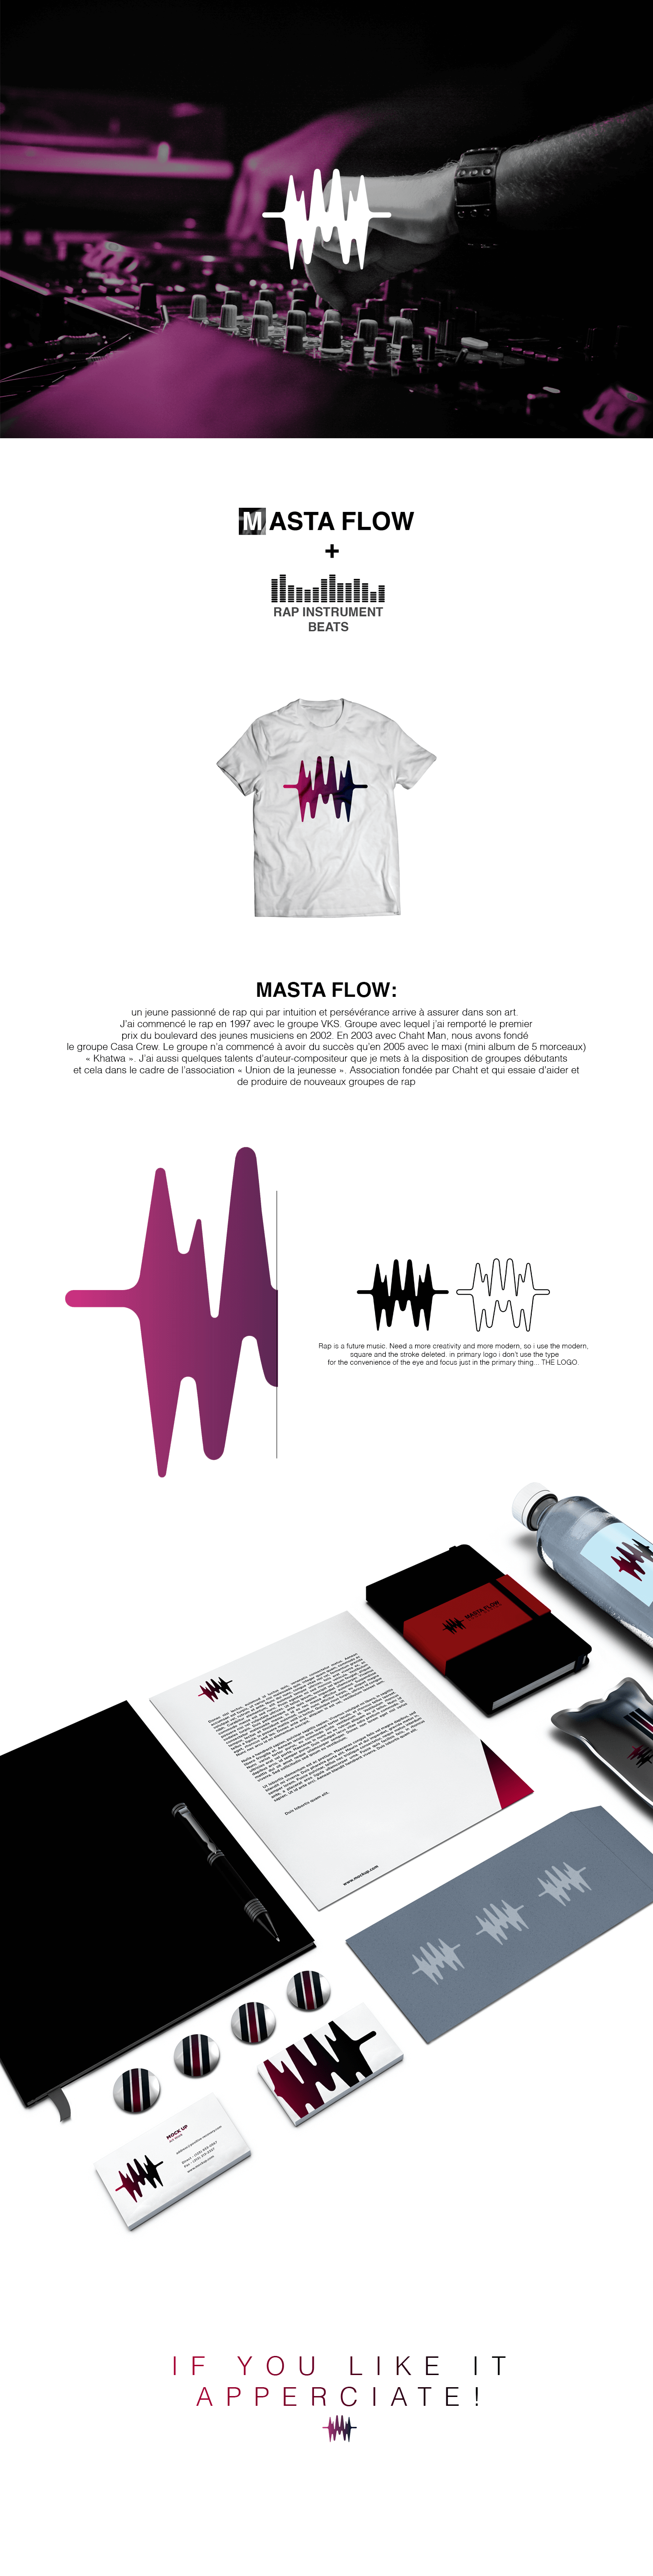 masta flow MASTAFLOW HAMZALOTFI hamza Lotfi design logo rap